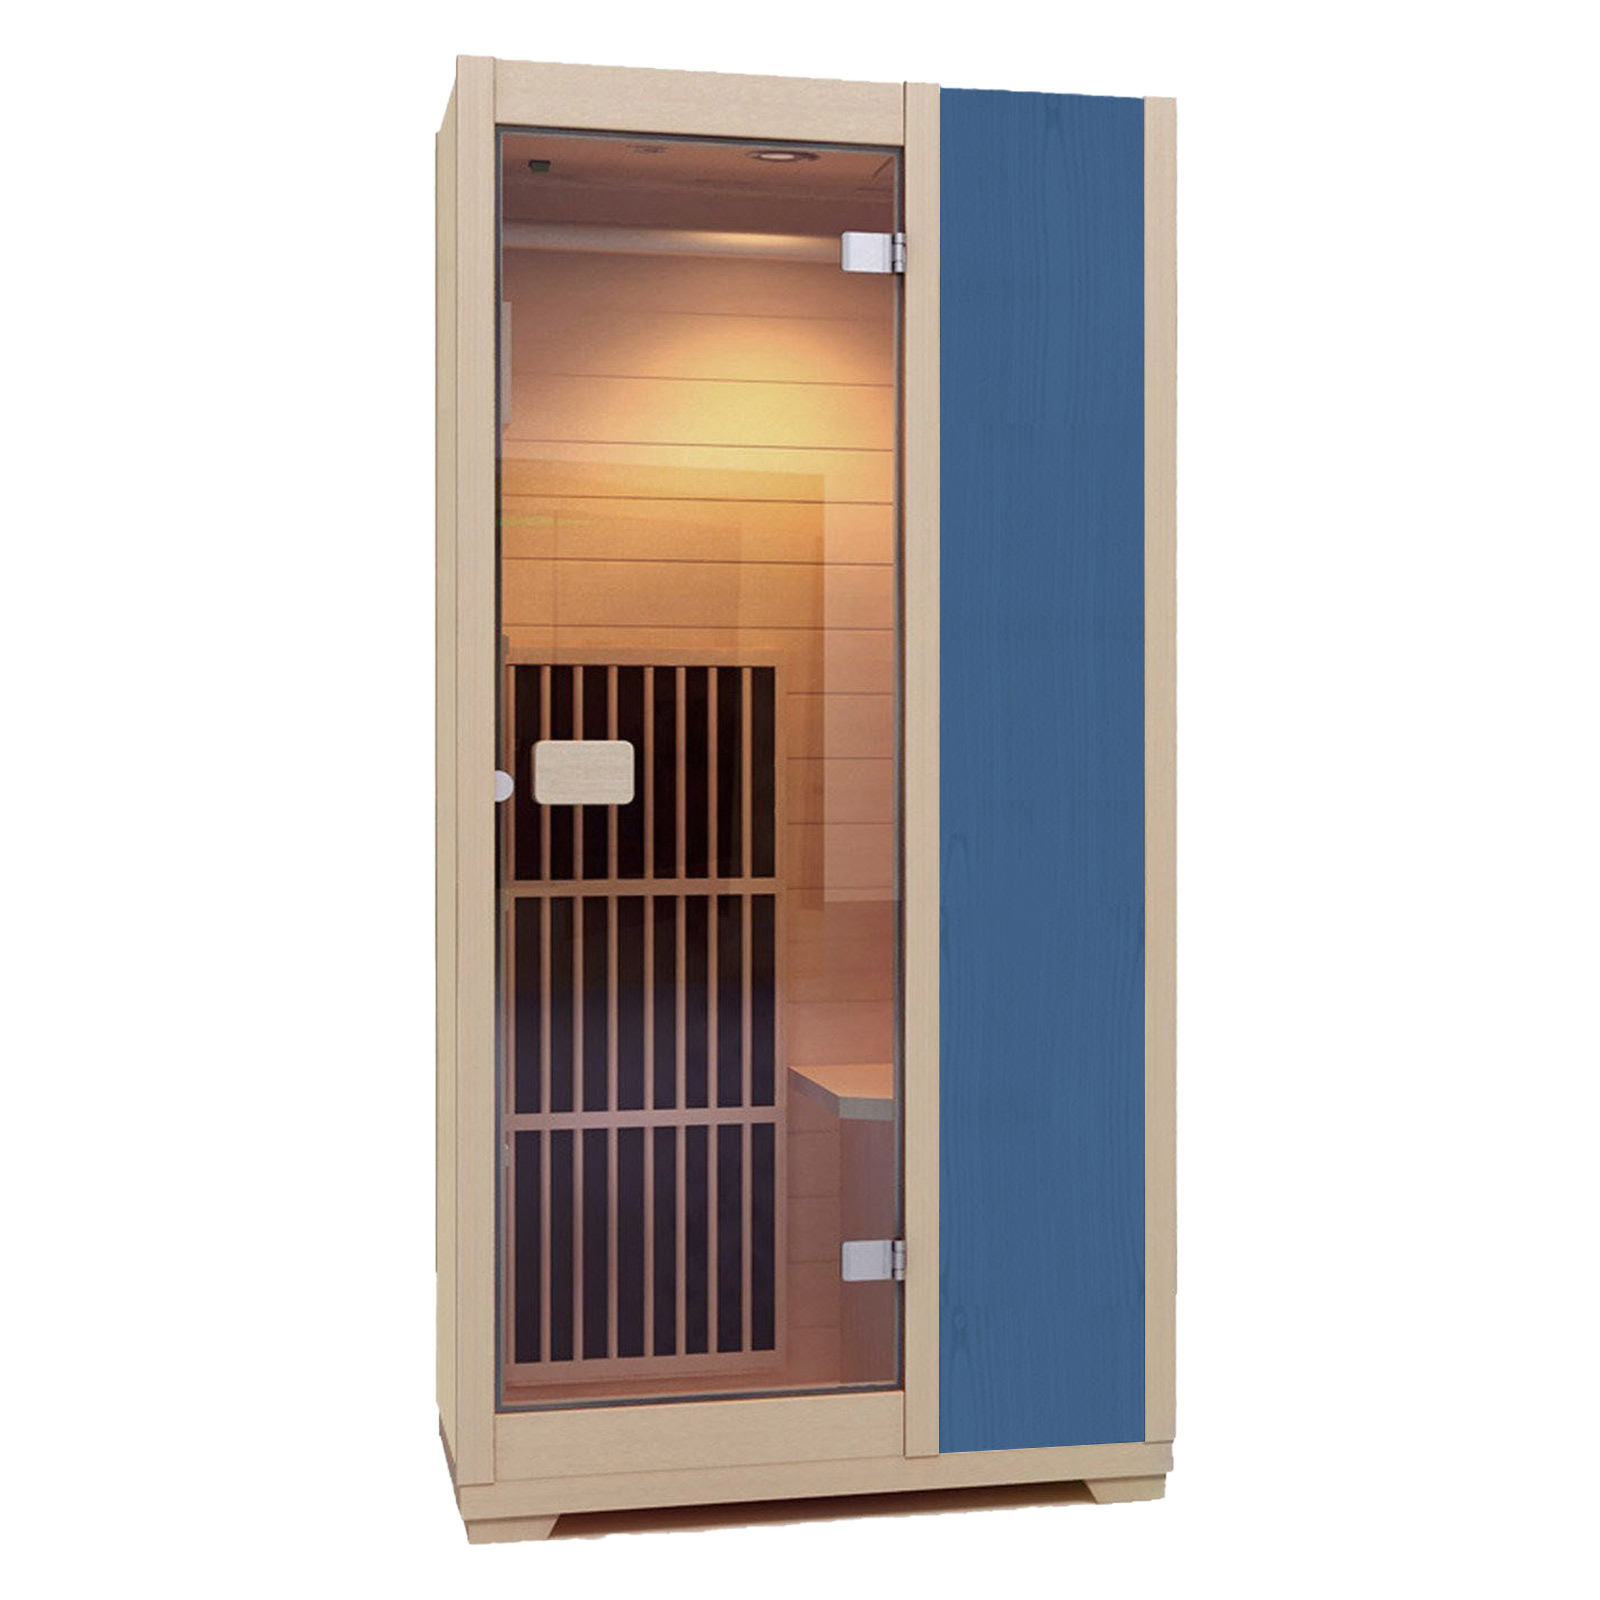 Zen Ferninfrarot-Sauna für 1 Person - Blau